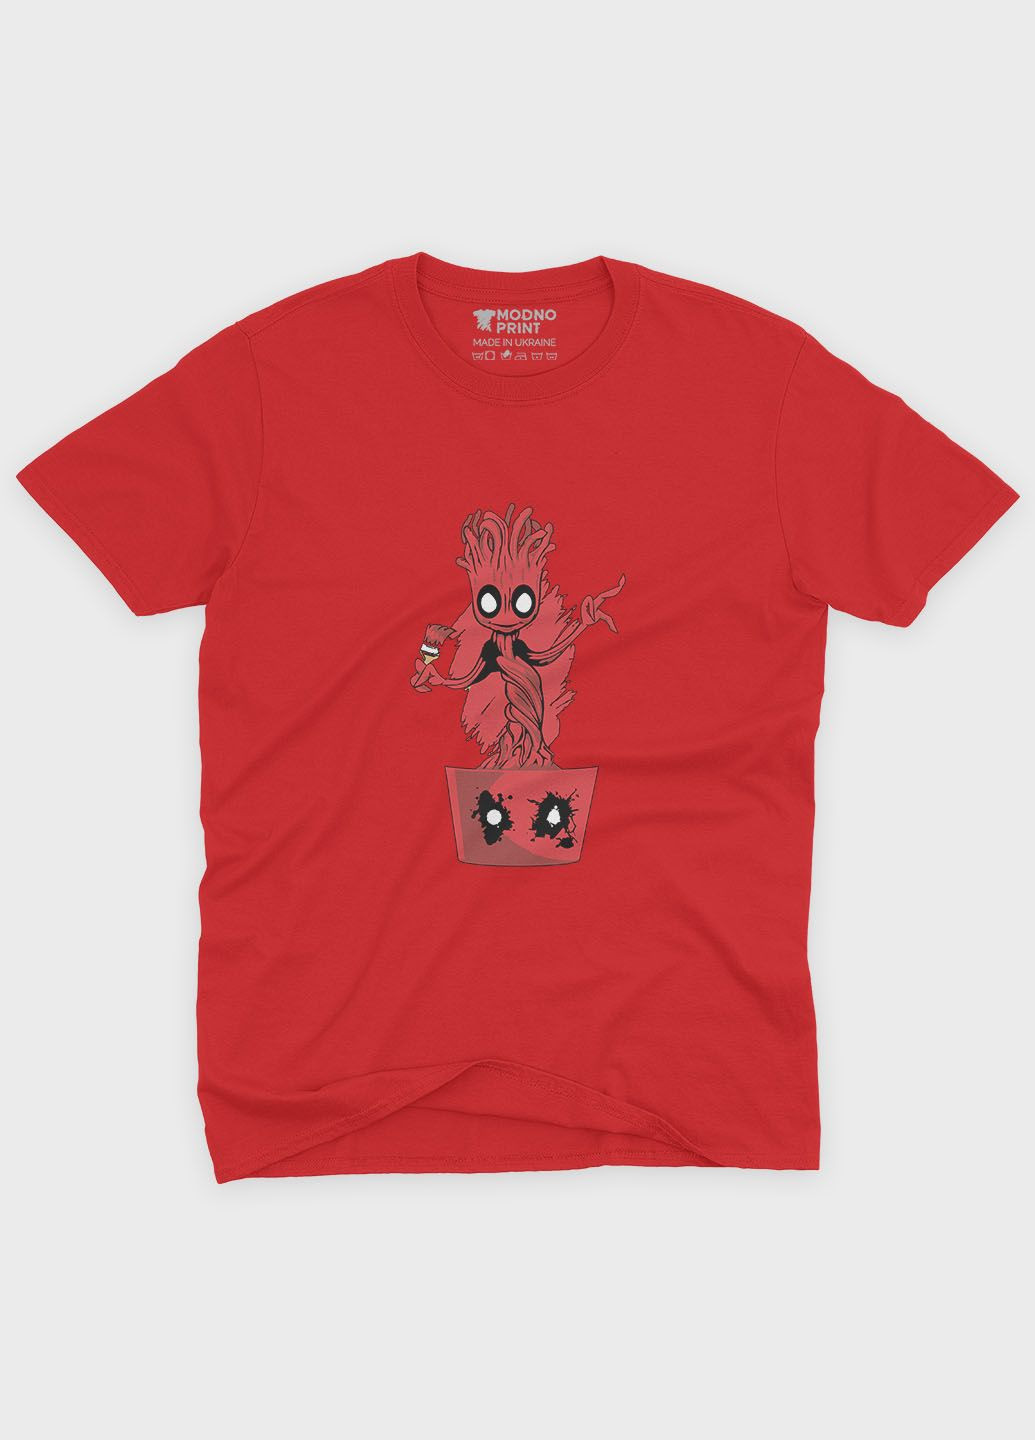 Червона демісезонна футболка для хлопчика з принтом антигероя - дедпул (ts001-1-sre-006-015-033-b) Modno